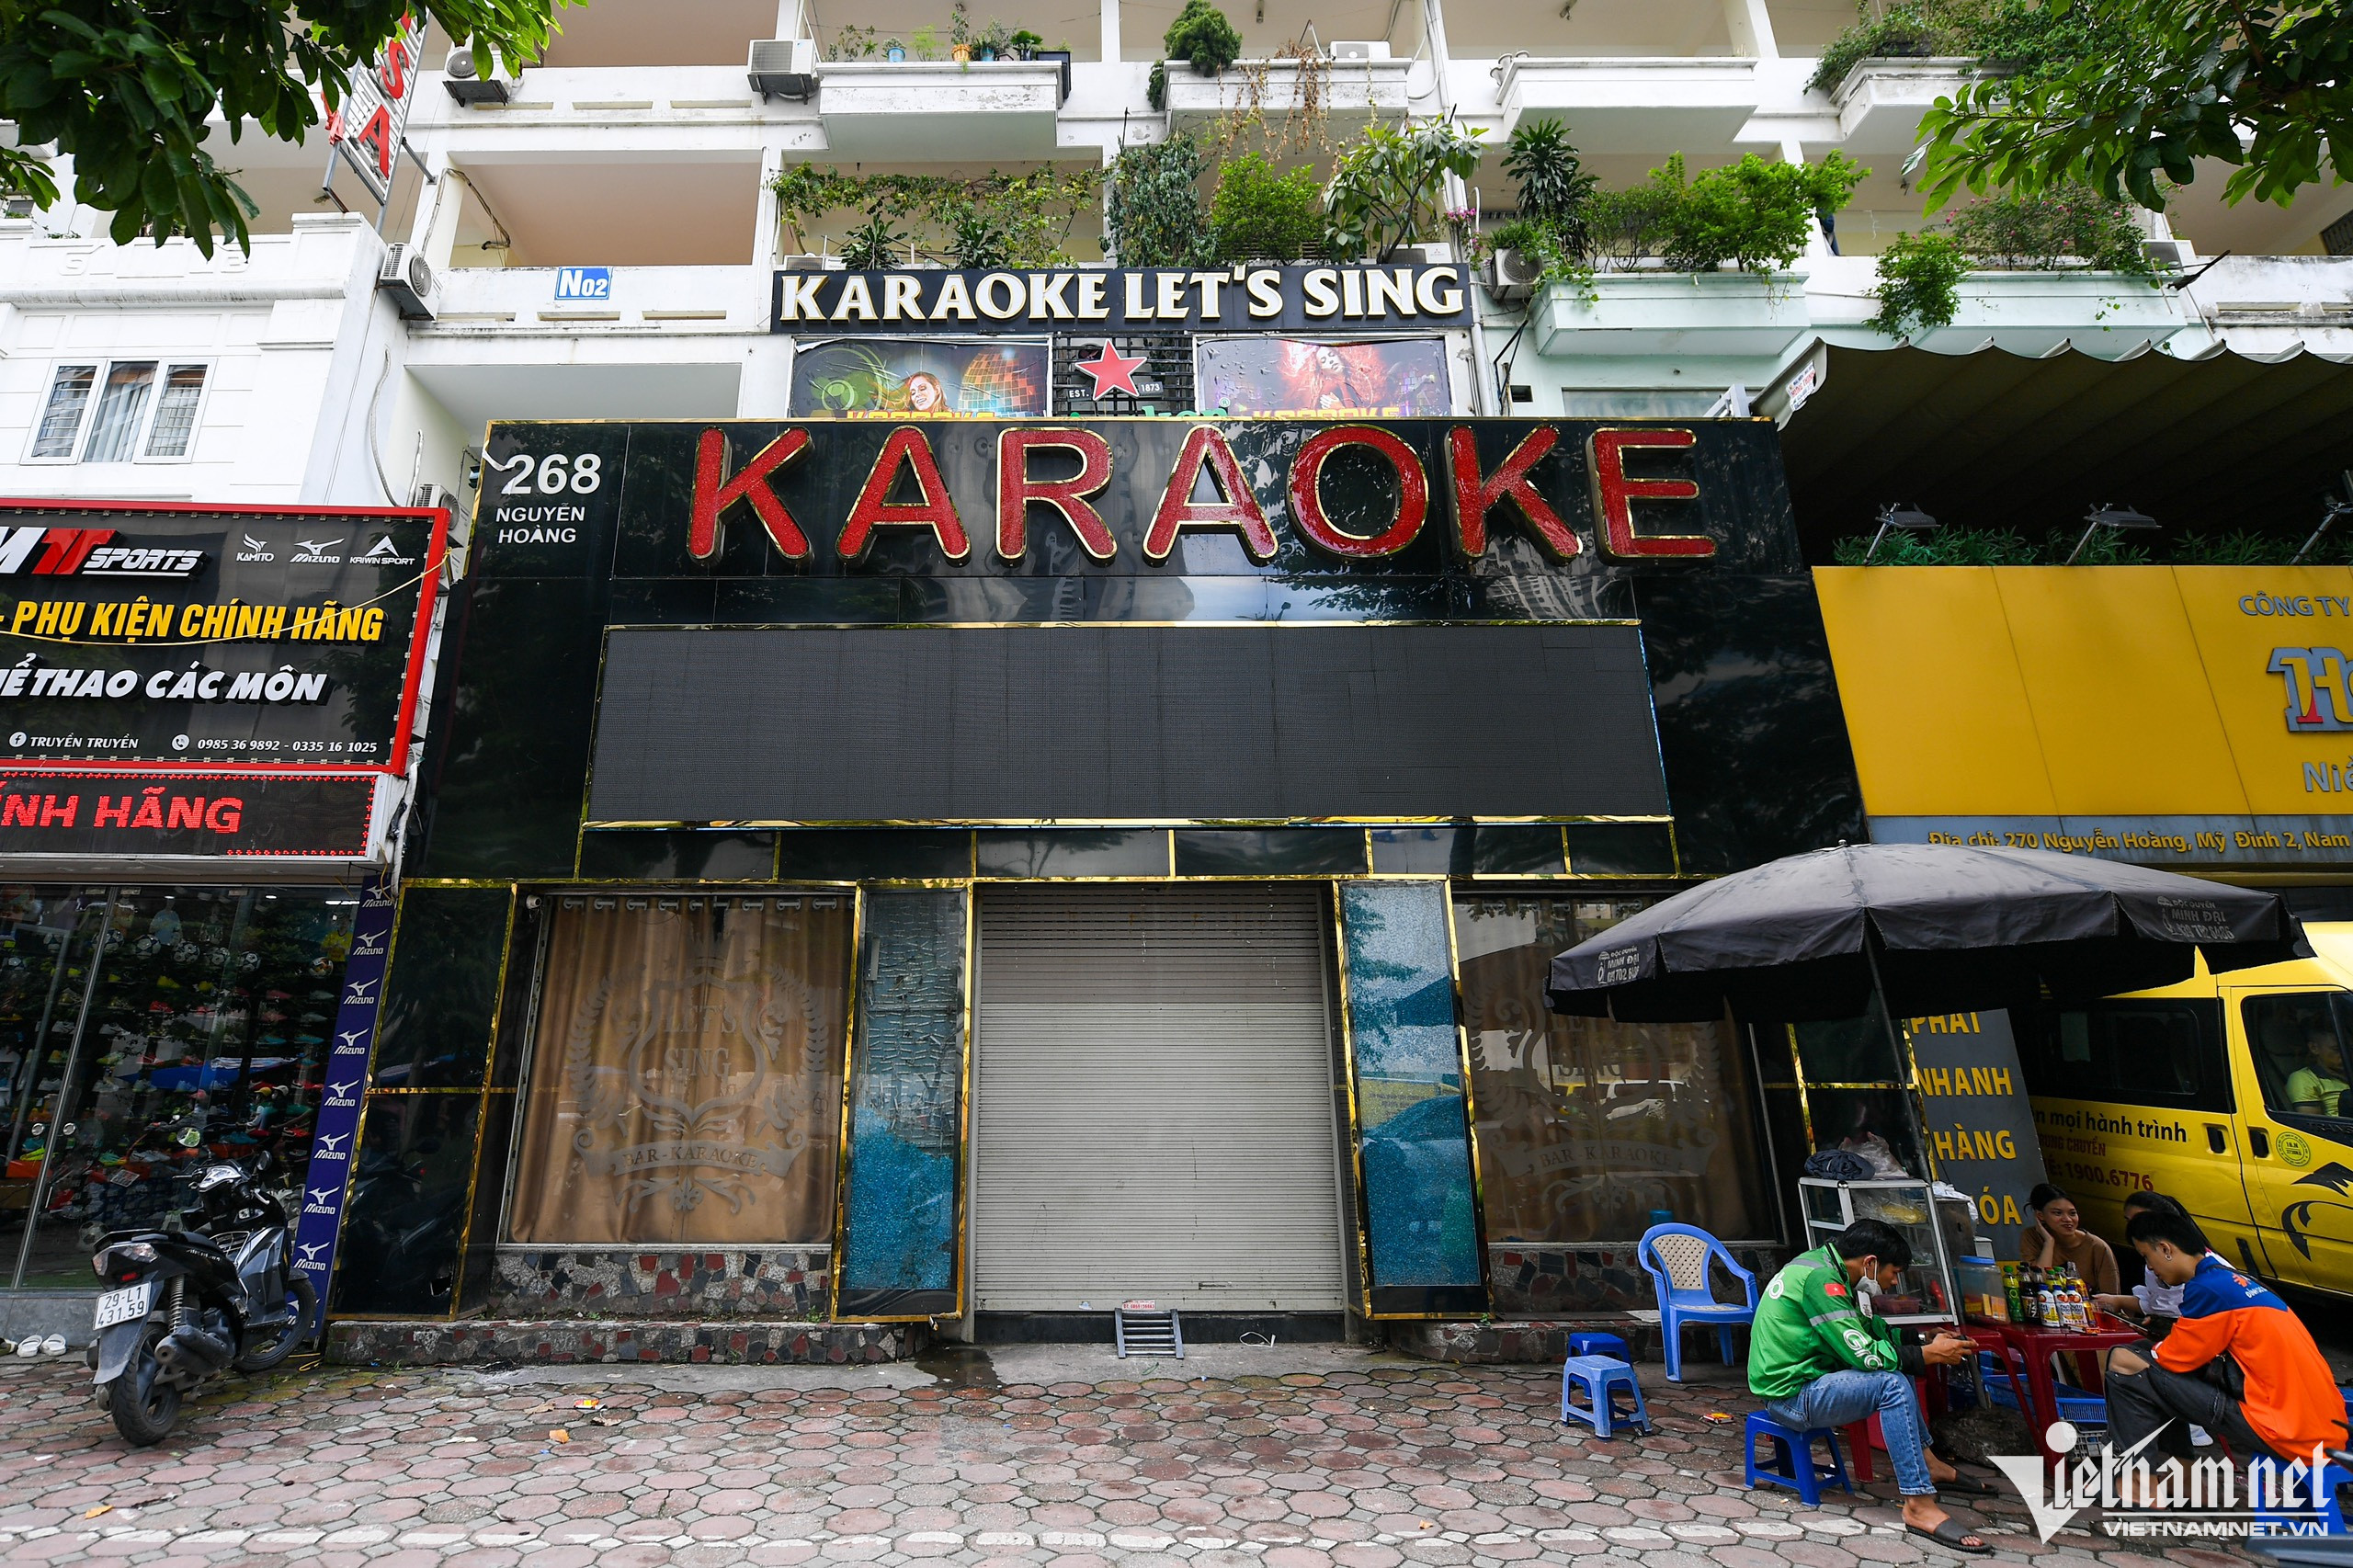 Hiện trên địa bàn Hà Nội đang có nhiều quán karaoke được thiết kế kín mít, phía trước bị che chắn bởi các tấm biển quảng cáo cỡ nhỏ và lớn. 